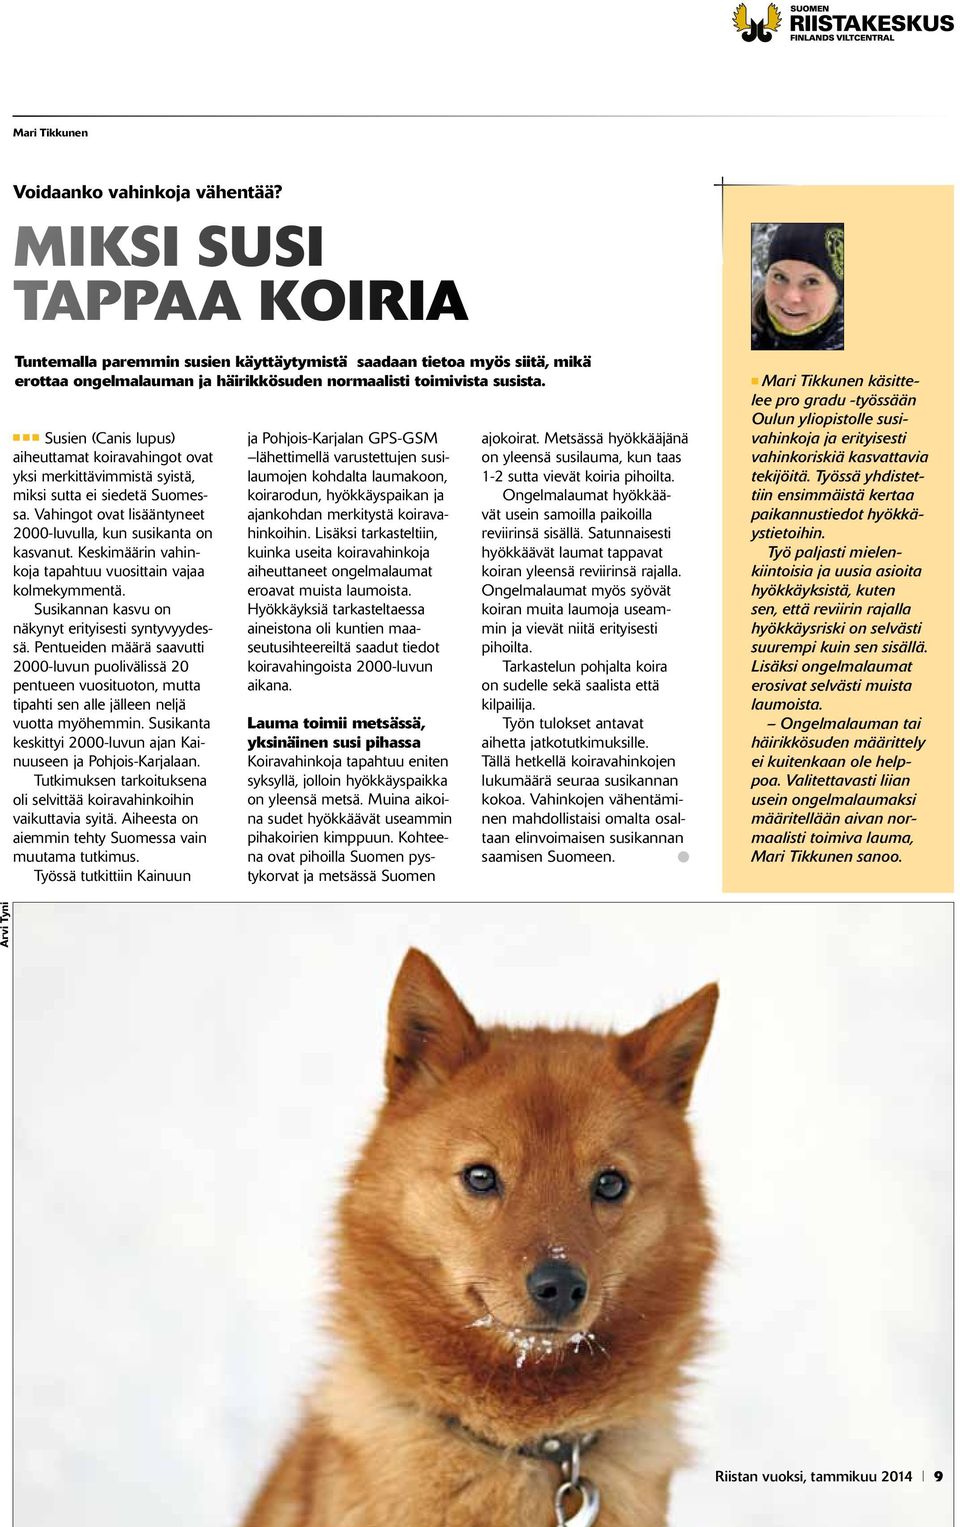 n n n Susien (Canis lupus) aiheuttamat koiravahingot ovat yksi merkittävimmistä syistä, miksi sutta ei siedetä Suomessa. Vahingot ovat lisääntyneet 2000-luvulla, kun susikanta on kasvanut.